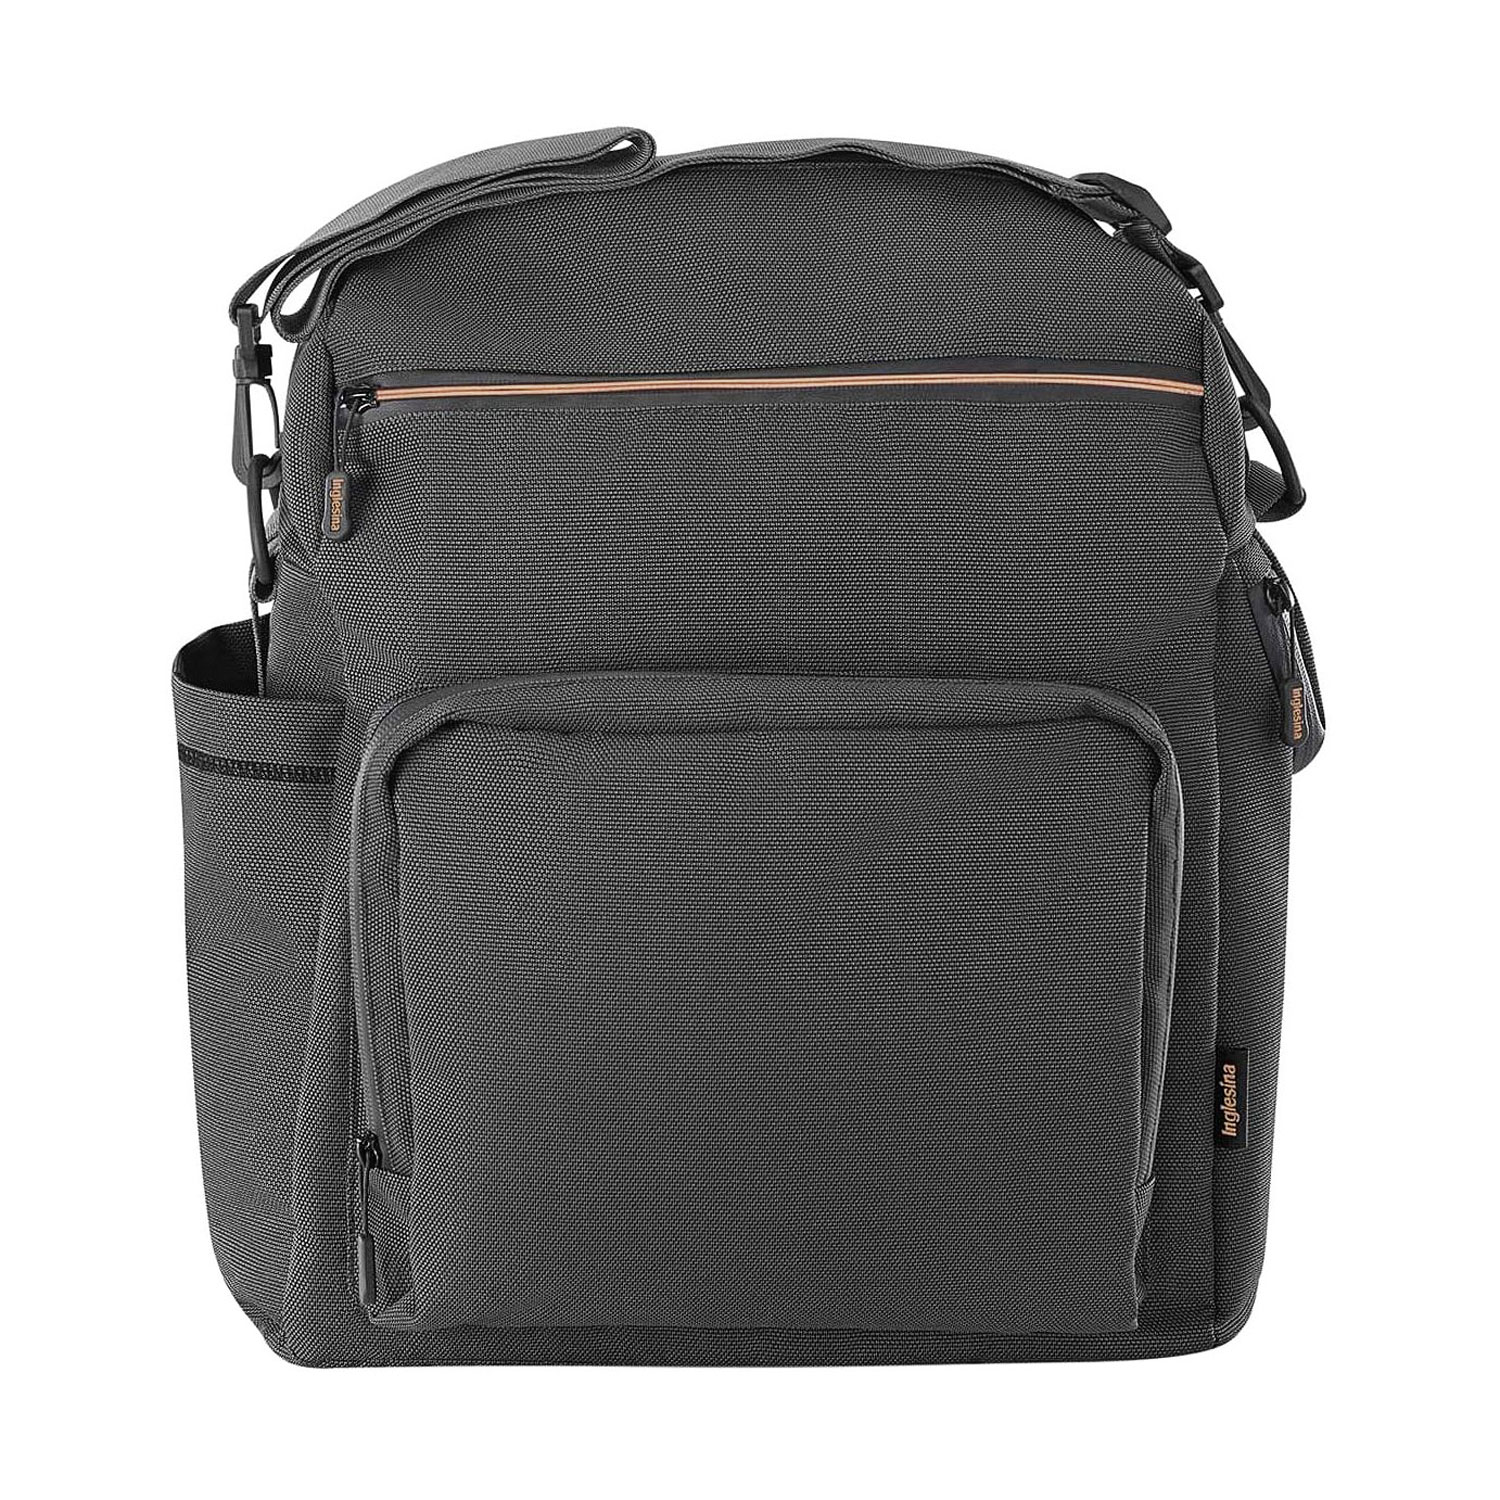 Сумка-рюкзак для коляски ADVENTURE BAG, цвет MAGNET GREY Inglesina сумка для планшета 75 55 наплечный ремень картон эстадо